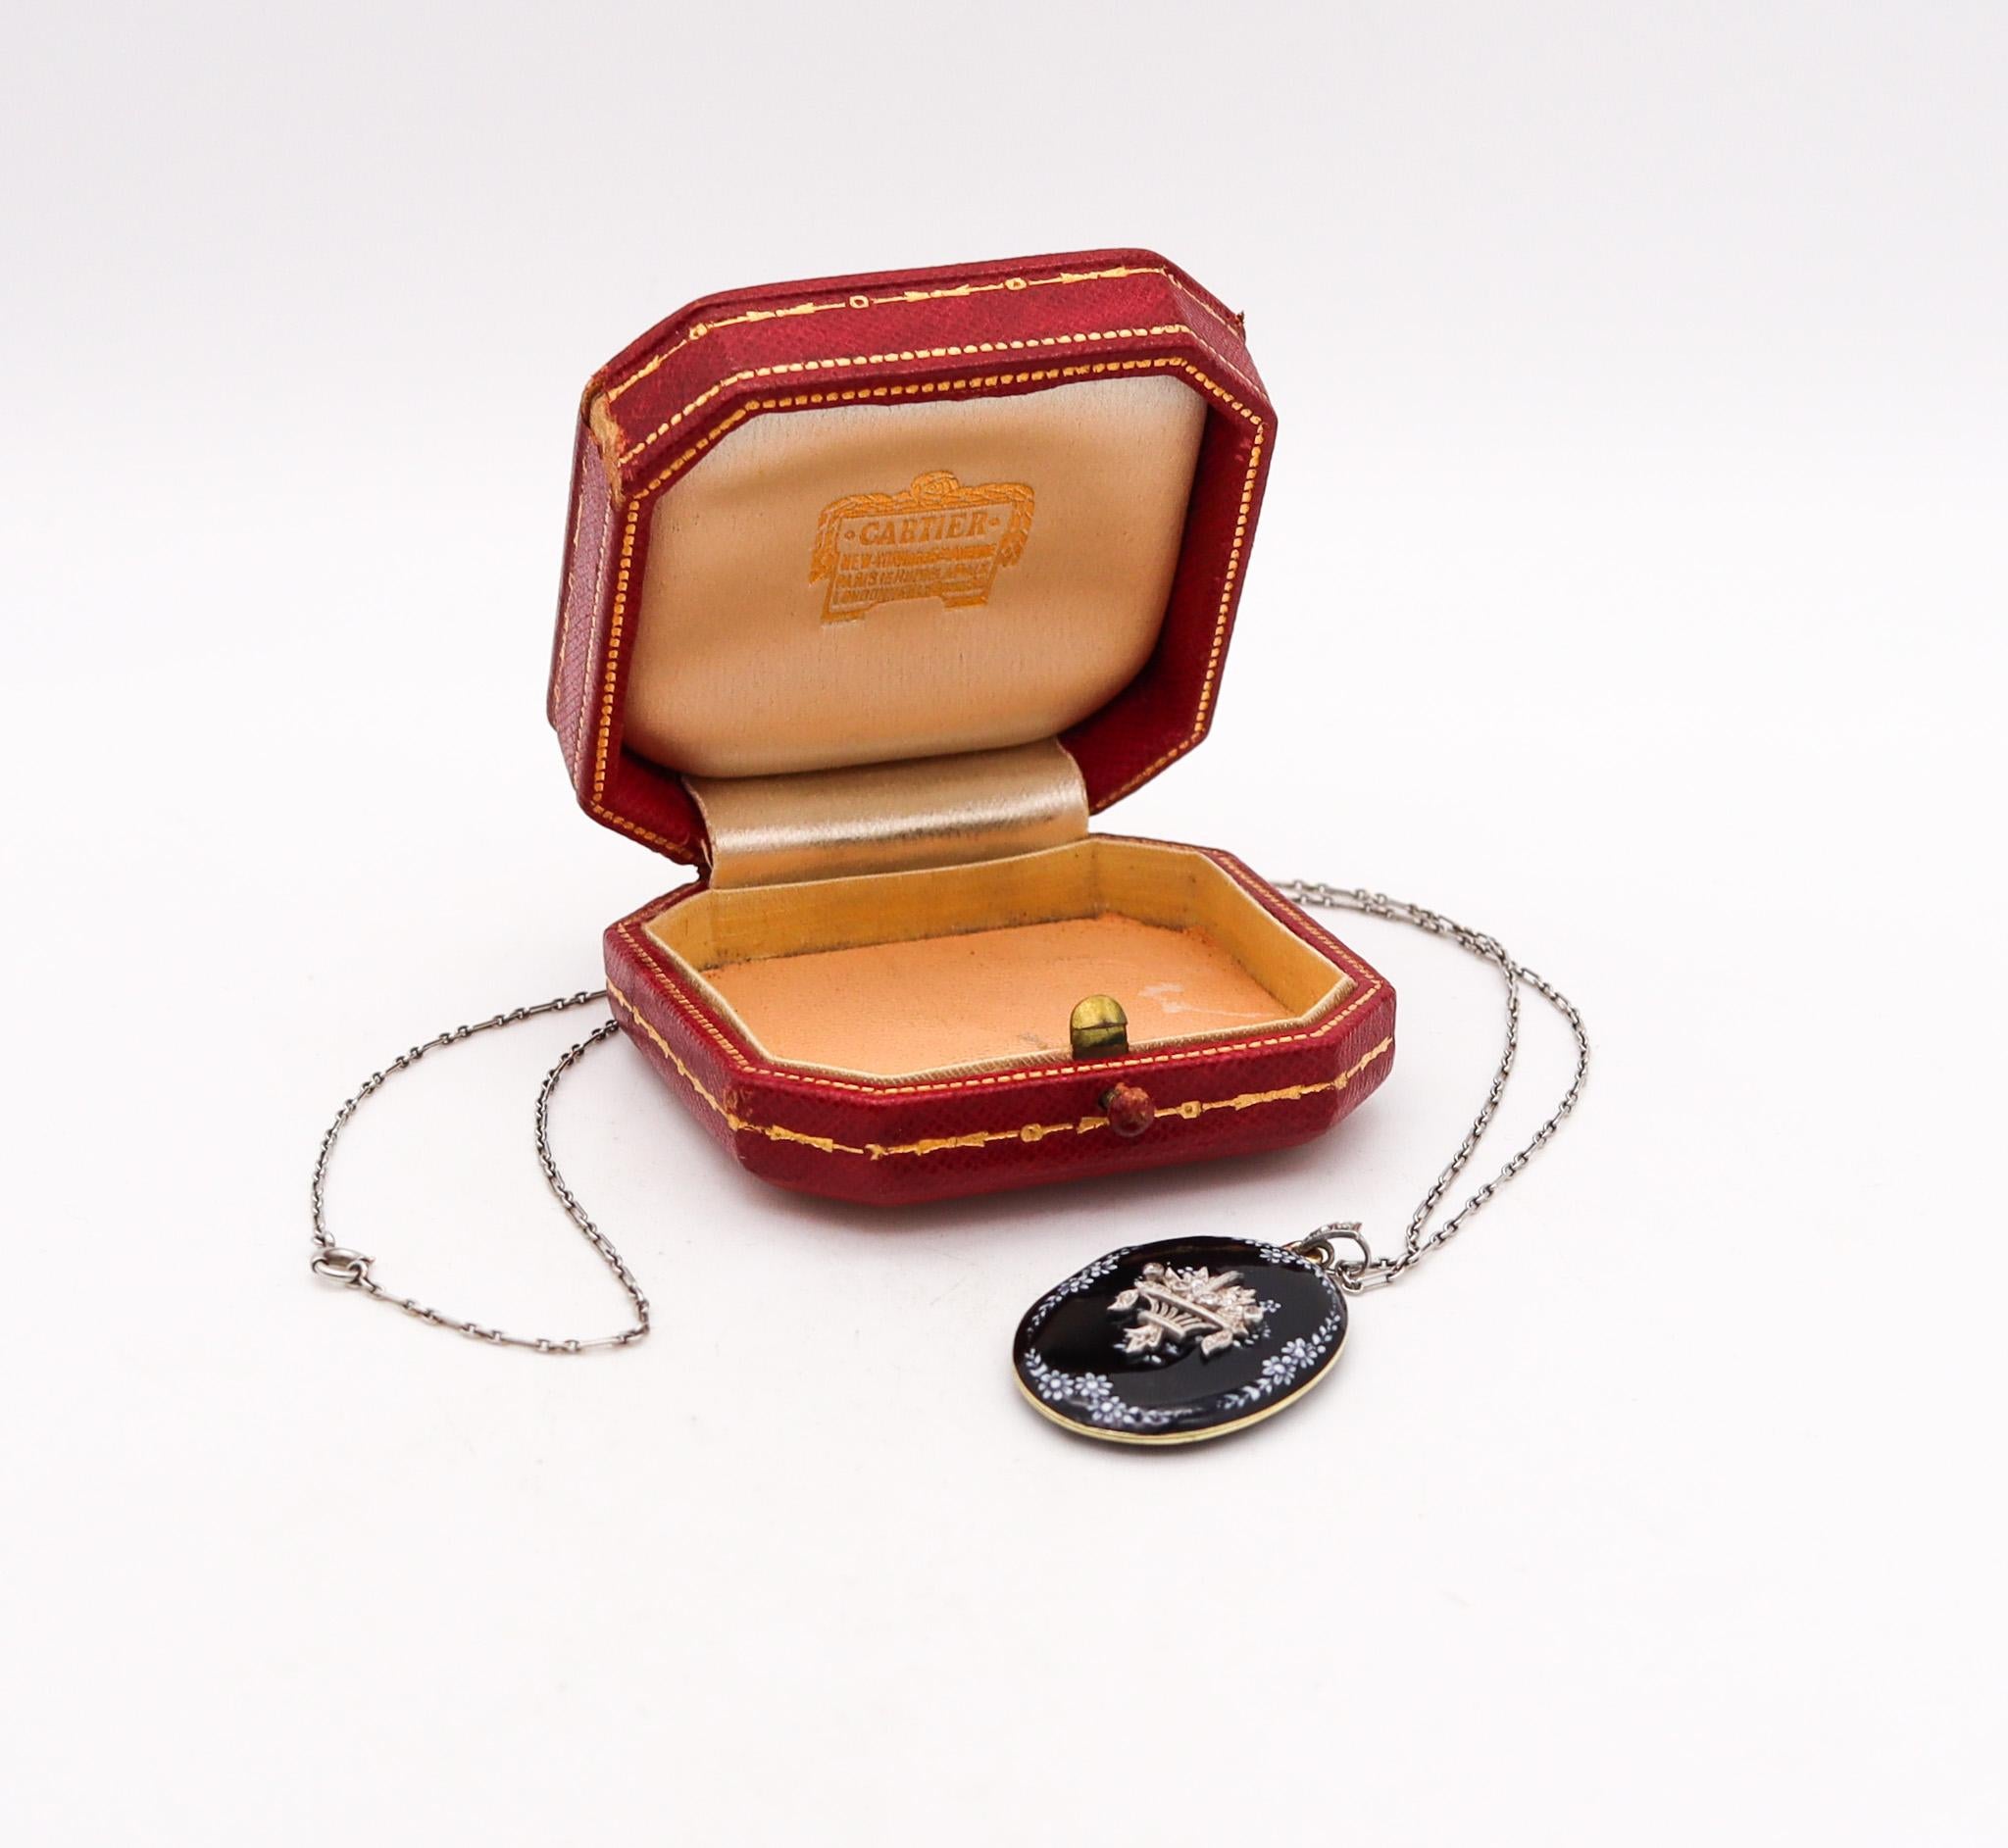 Collier médaillon conçu par Cartier.

Magnifique collier-montre ancien, créé au début de la période édouardienne par la House of Antiques, dans les années 1900. Cette belle et rare pièce a été soigneusement réalisée sous la forme d'un médaillon